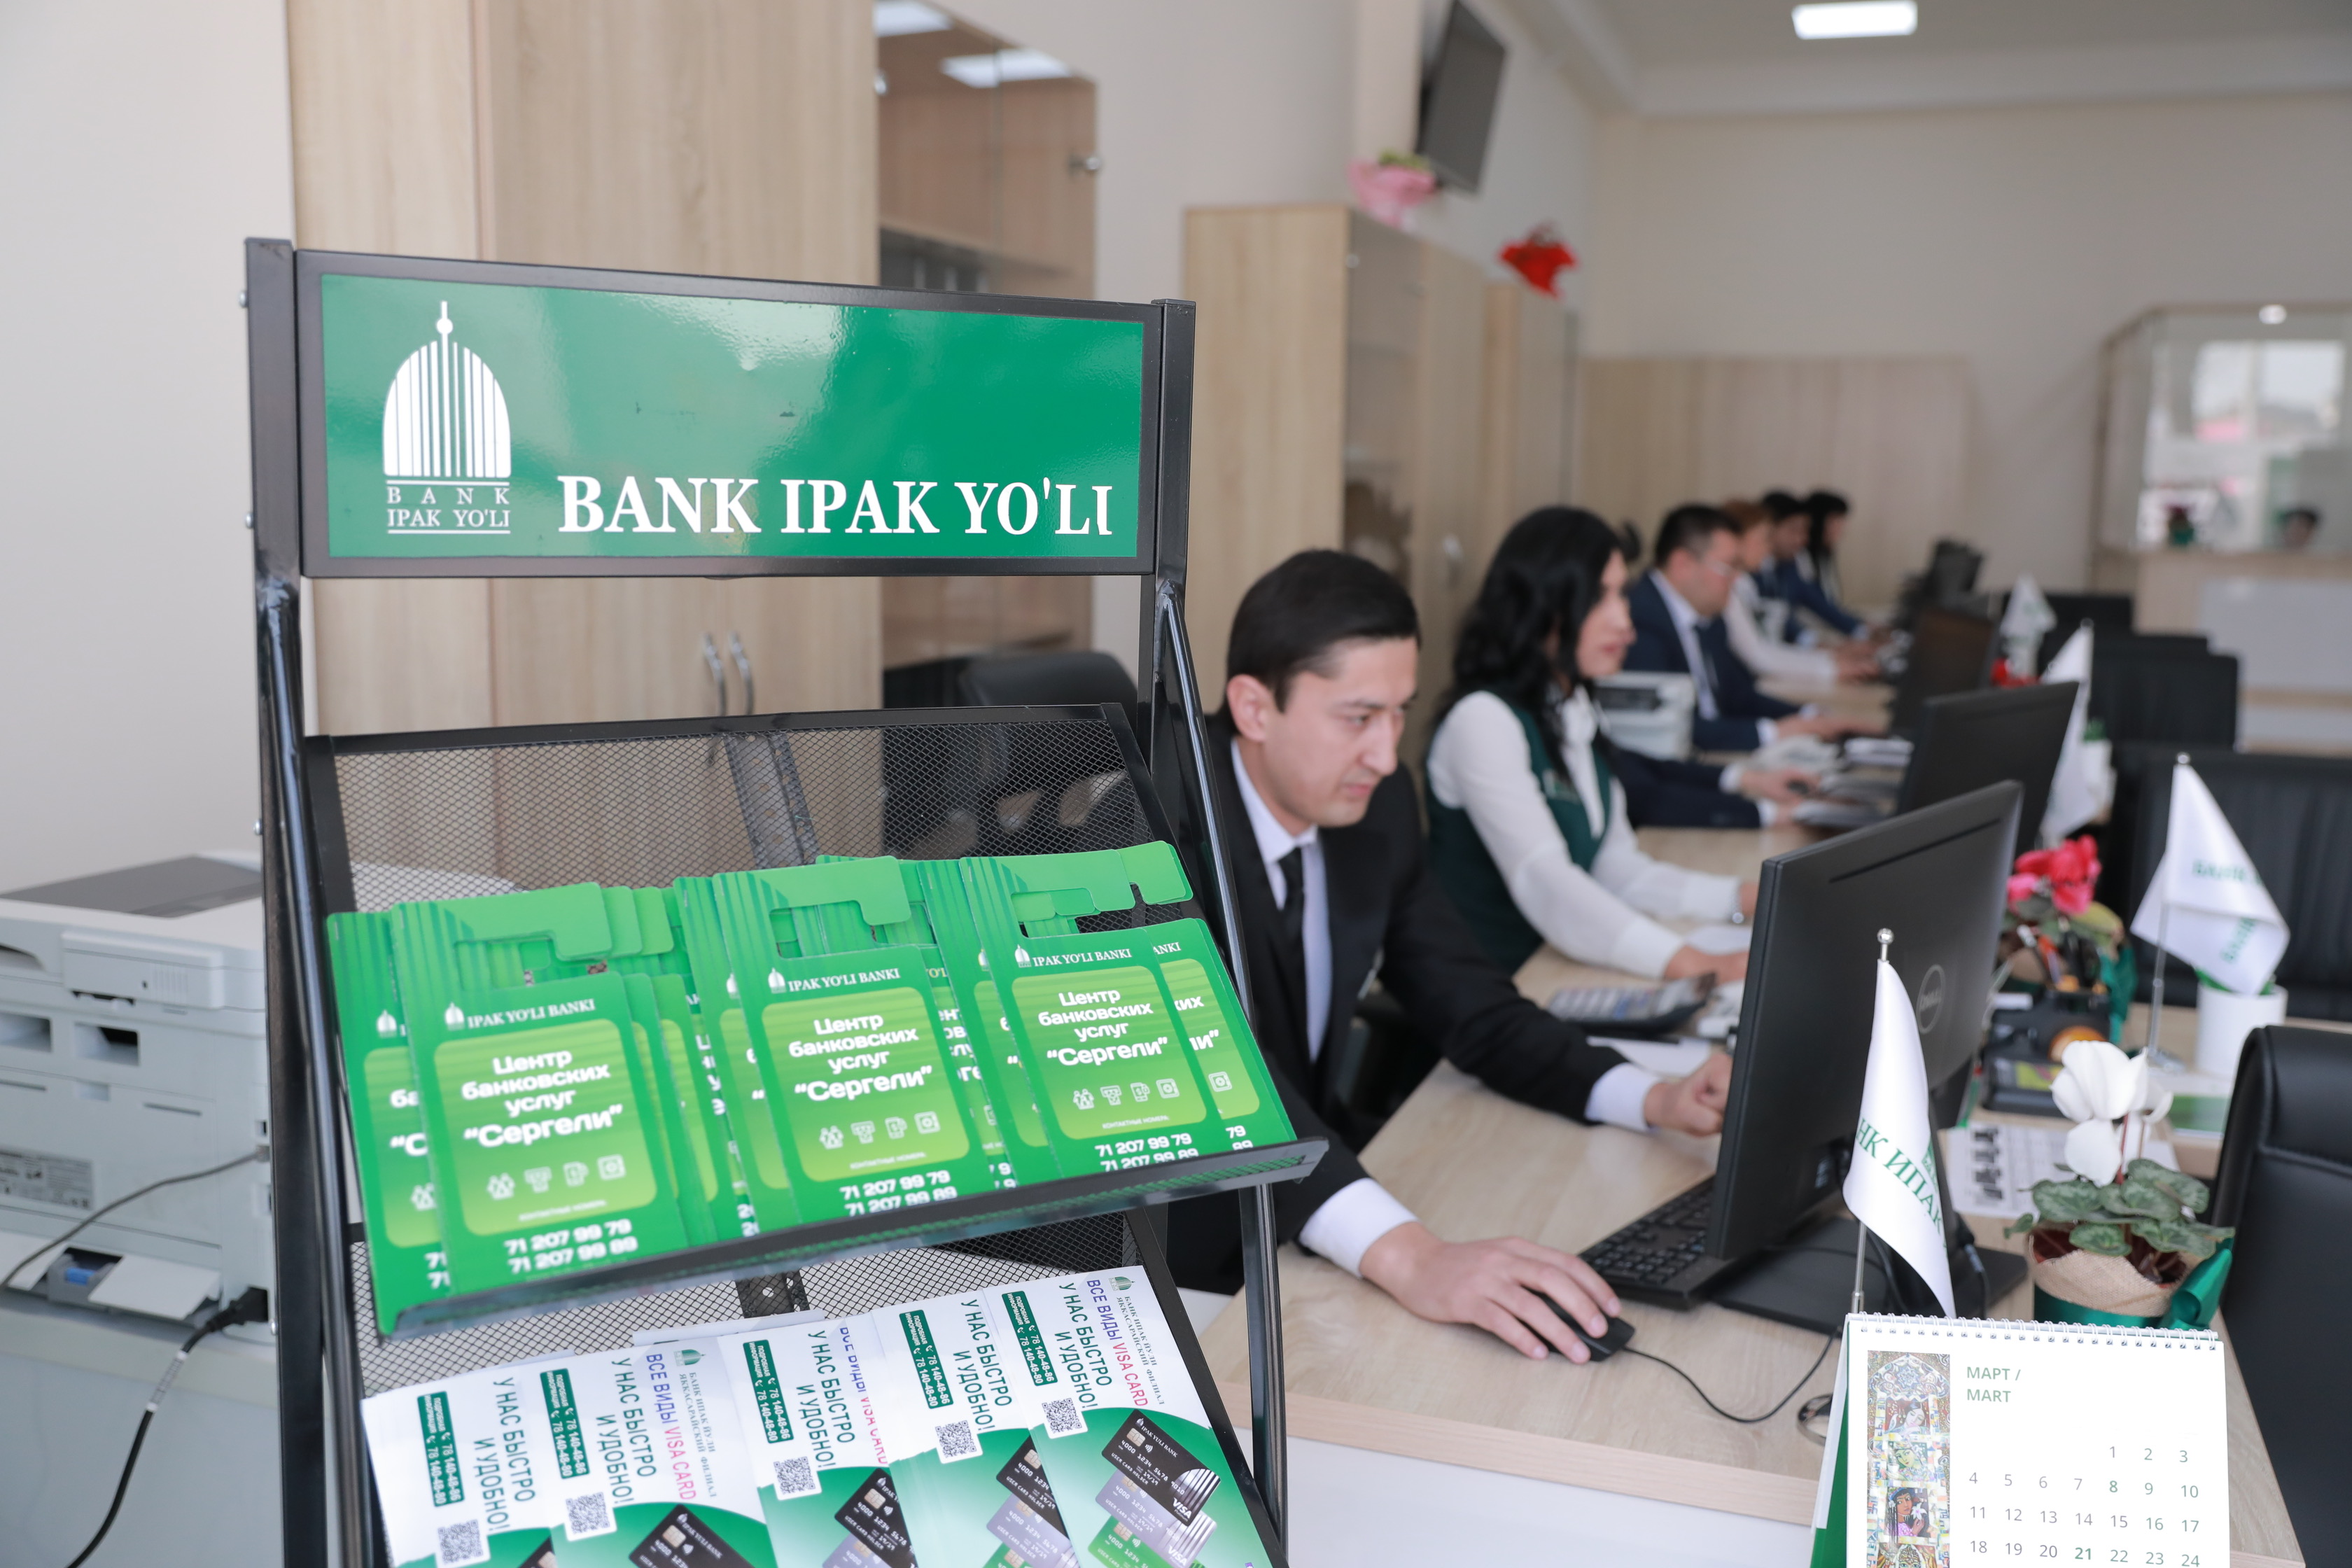 Ипак йули банк ташкент. Ипак банк Узбекистан. Банк Ипак йули в Ташкенте. Банк Ипак йули офис. Ipak Yuli Bank logo.